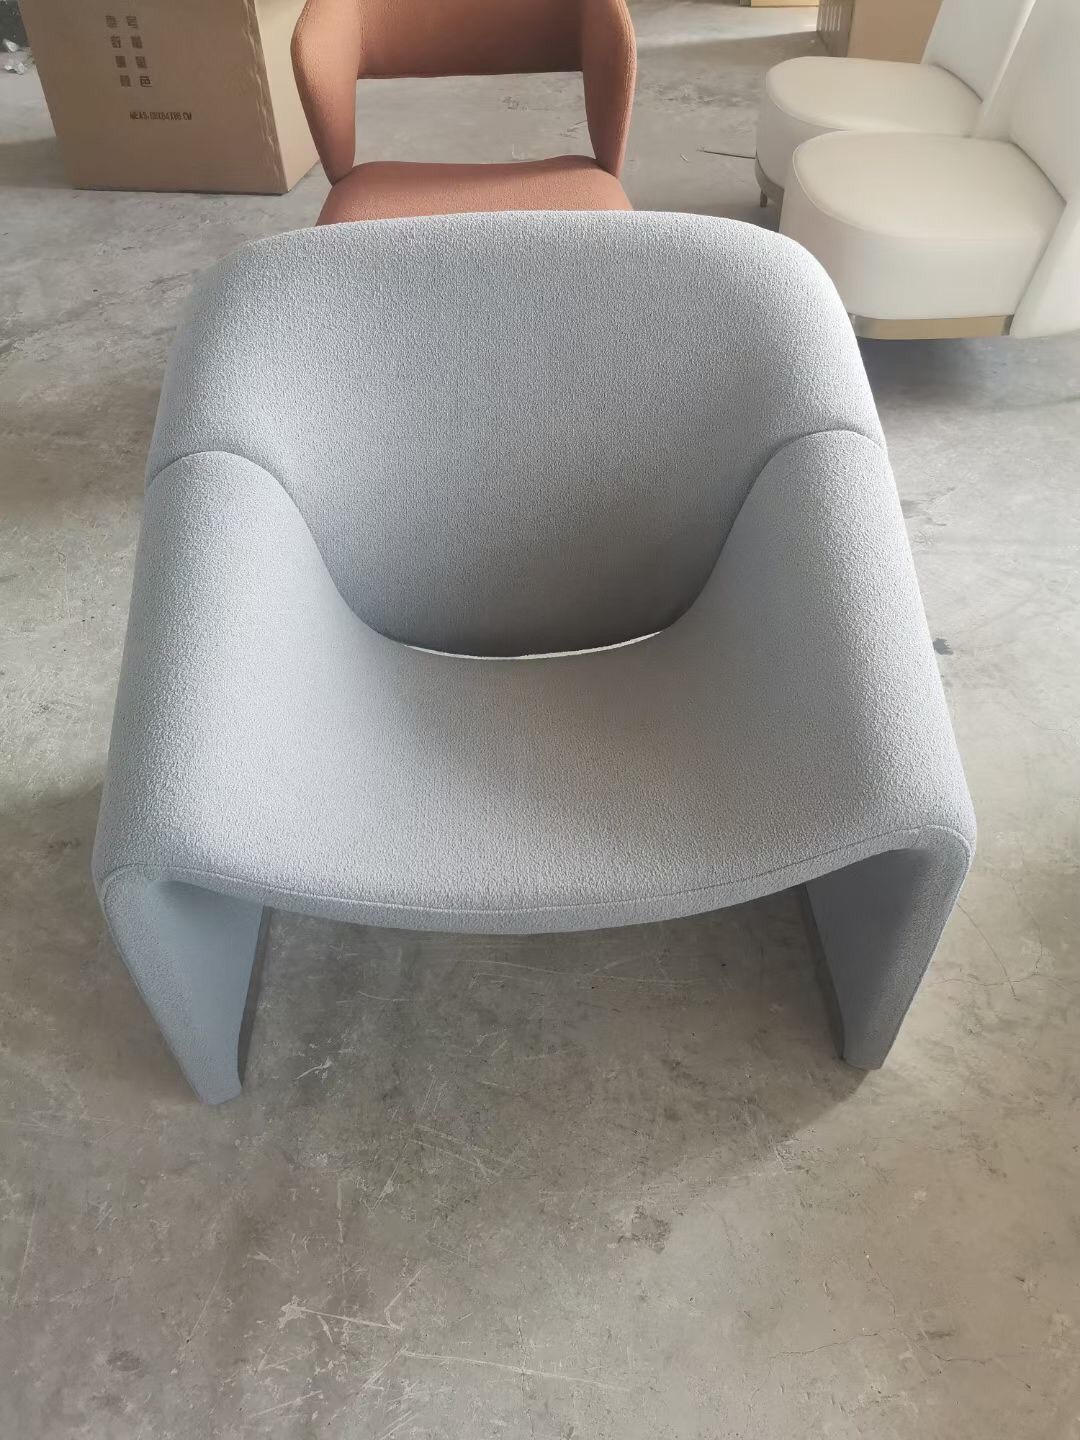 Groovy Chair